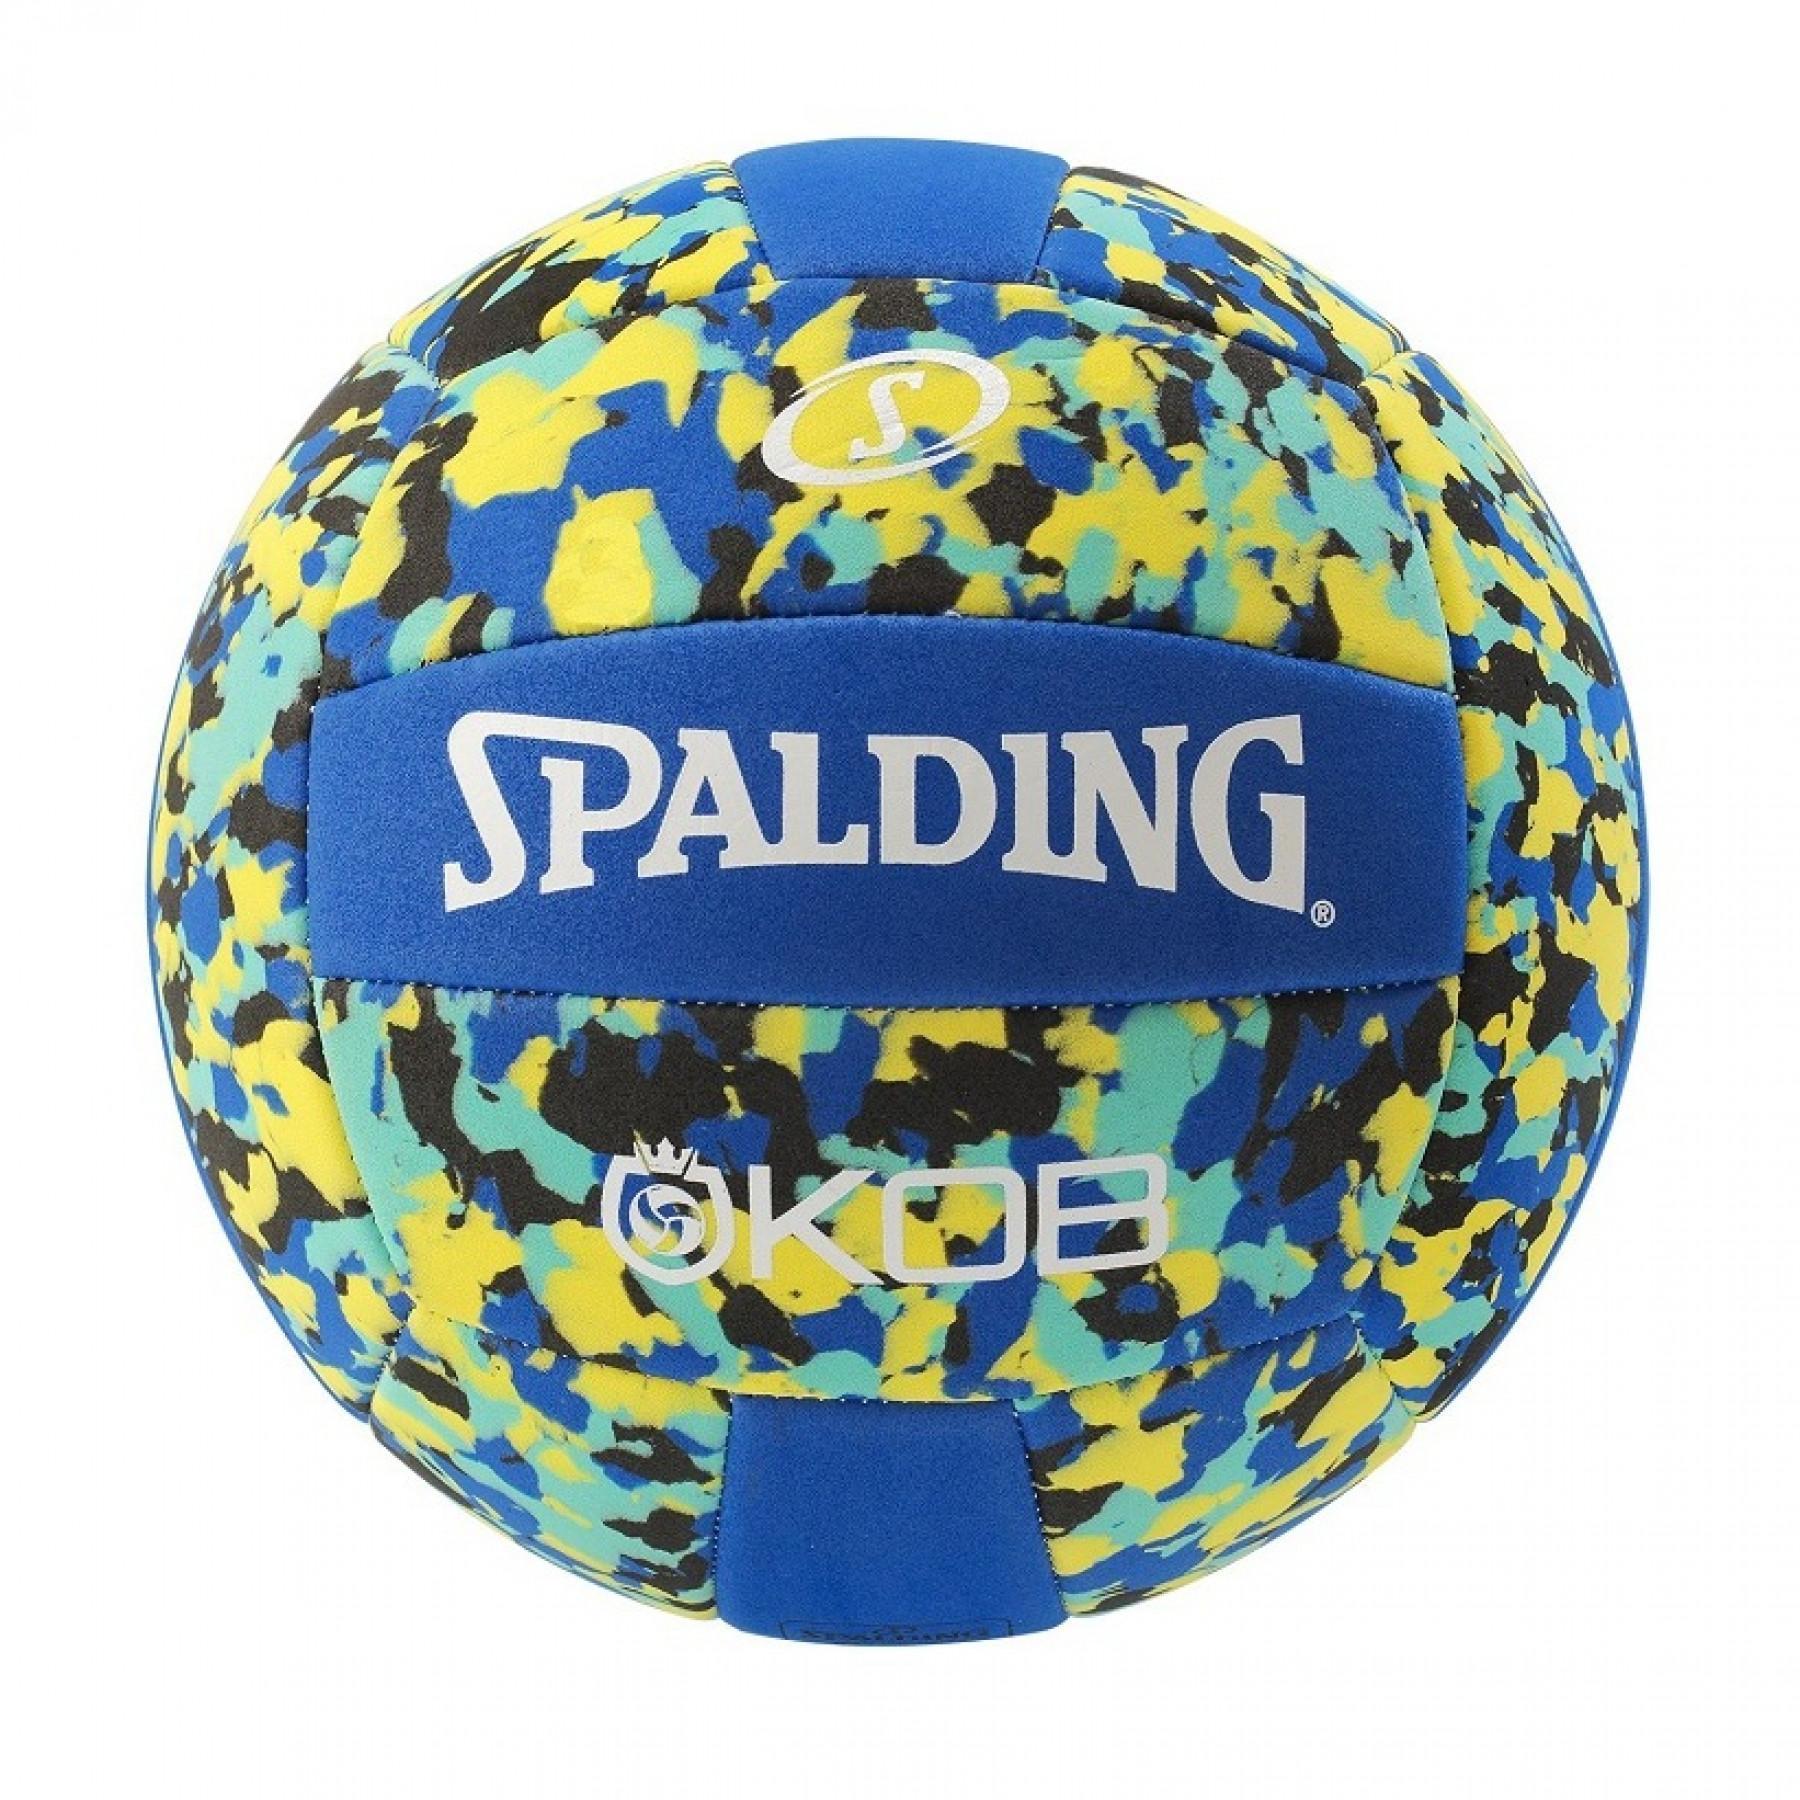 Beachvolleybal Spalding Kob bleu/jaune